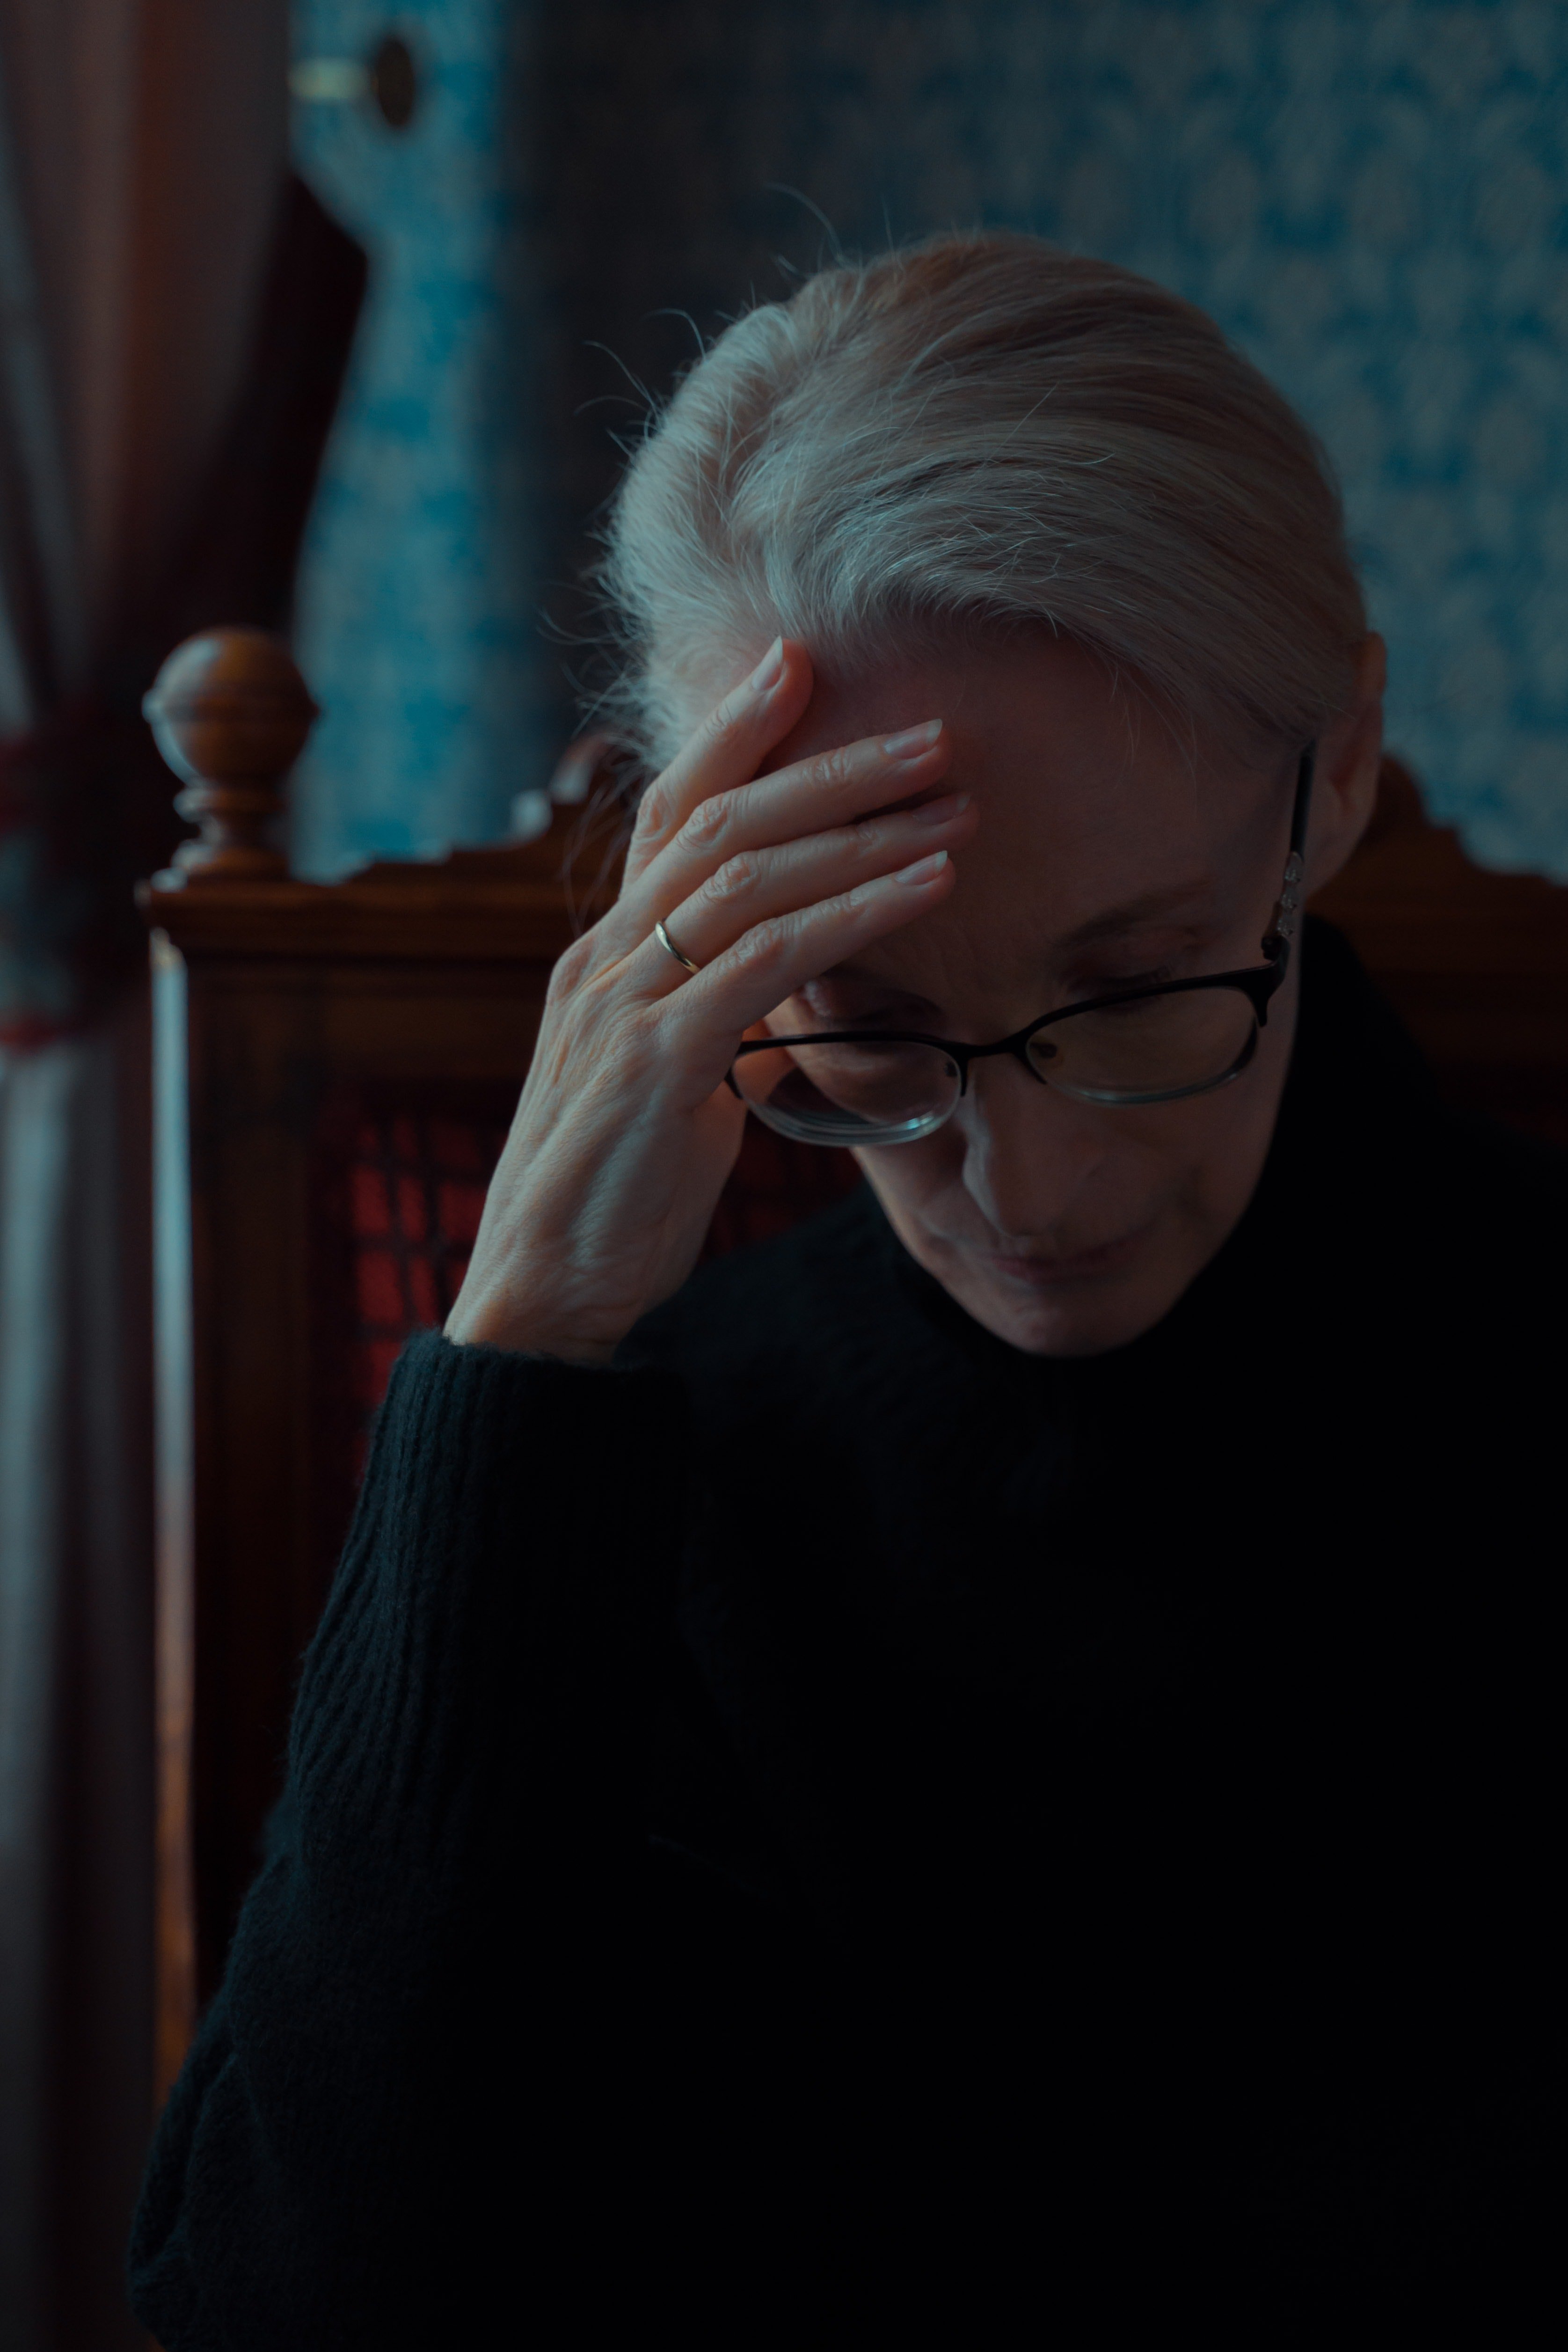 Una mujer se inclina con tristeza. | Foto: Pexels